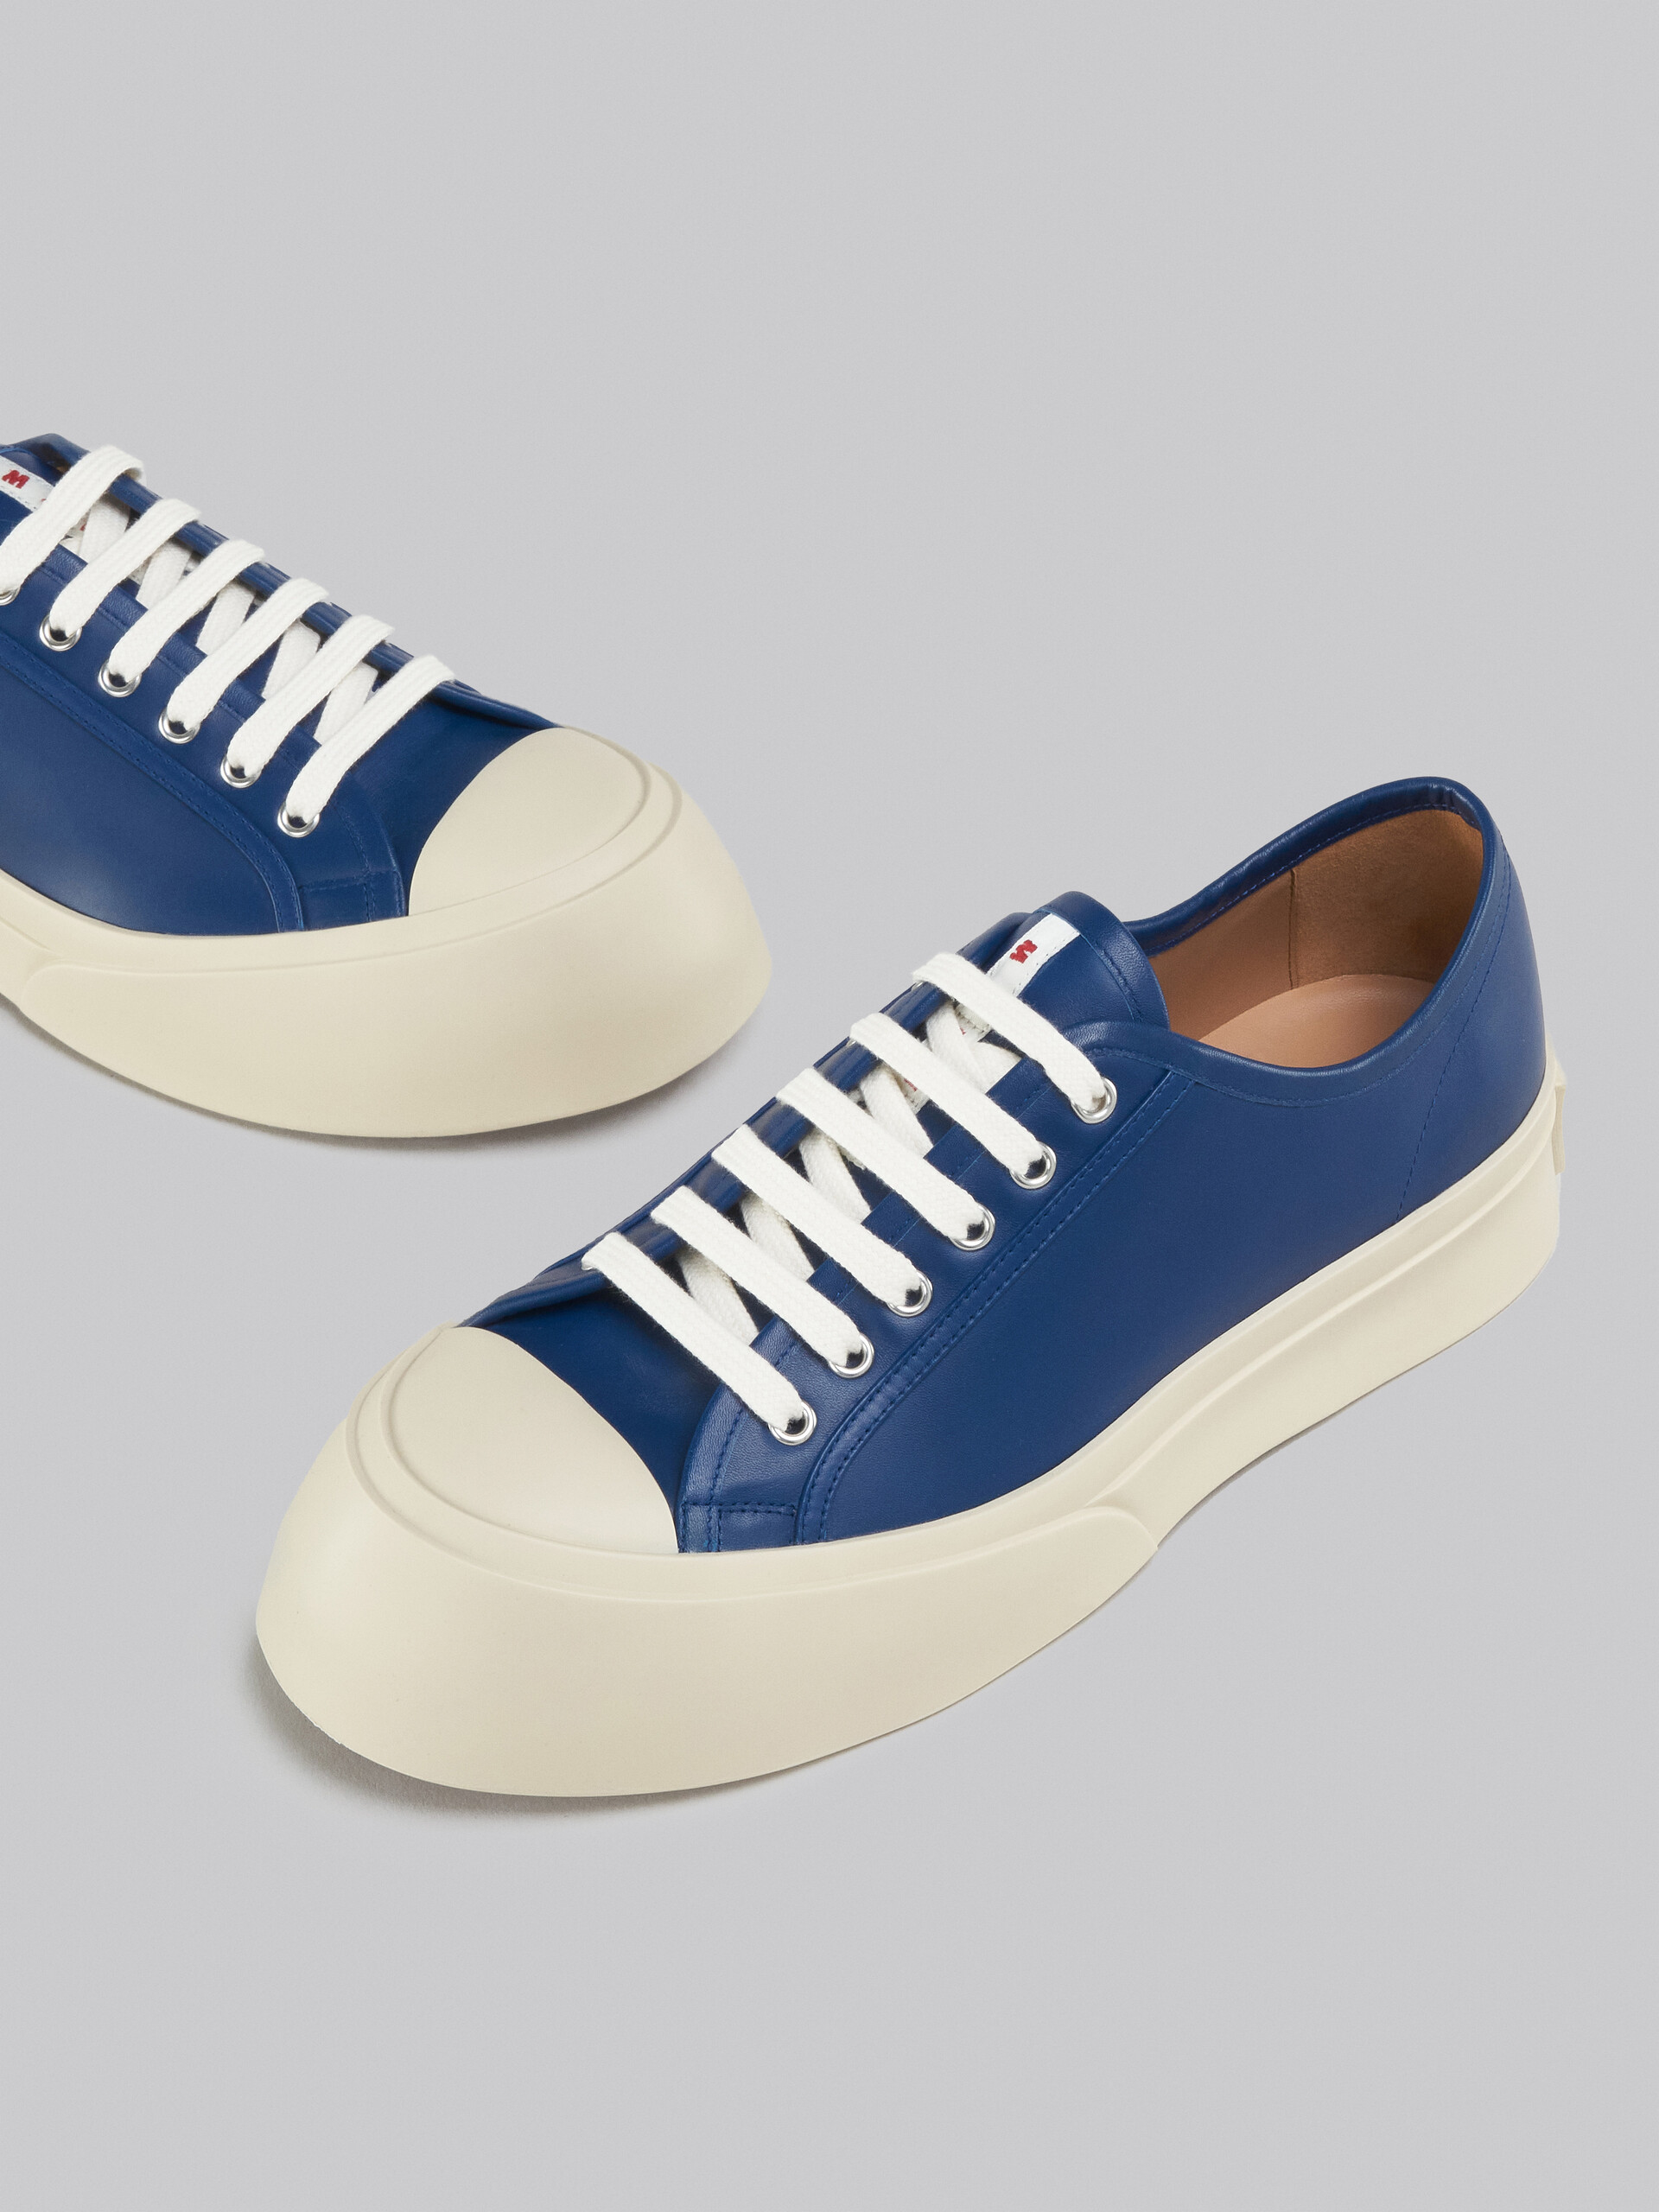 Sneakers Pablo en cuir nappa bleu - Sneakers - Image 5